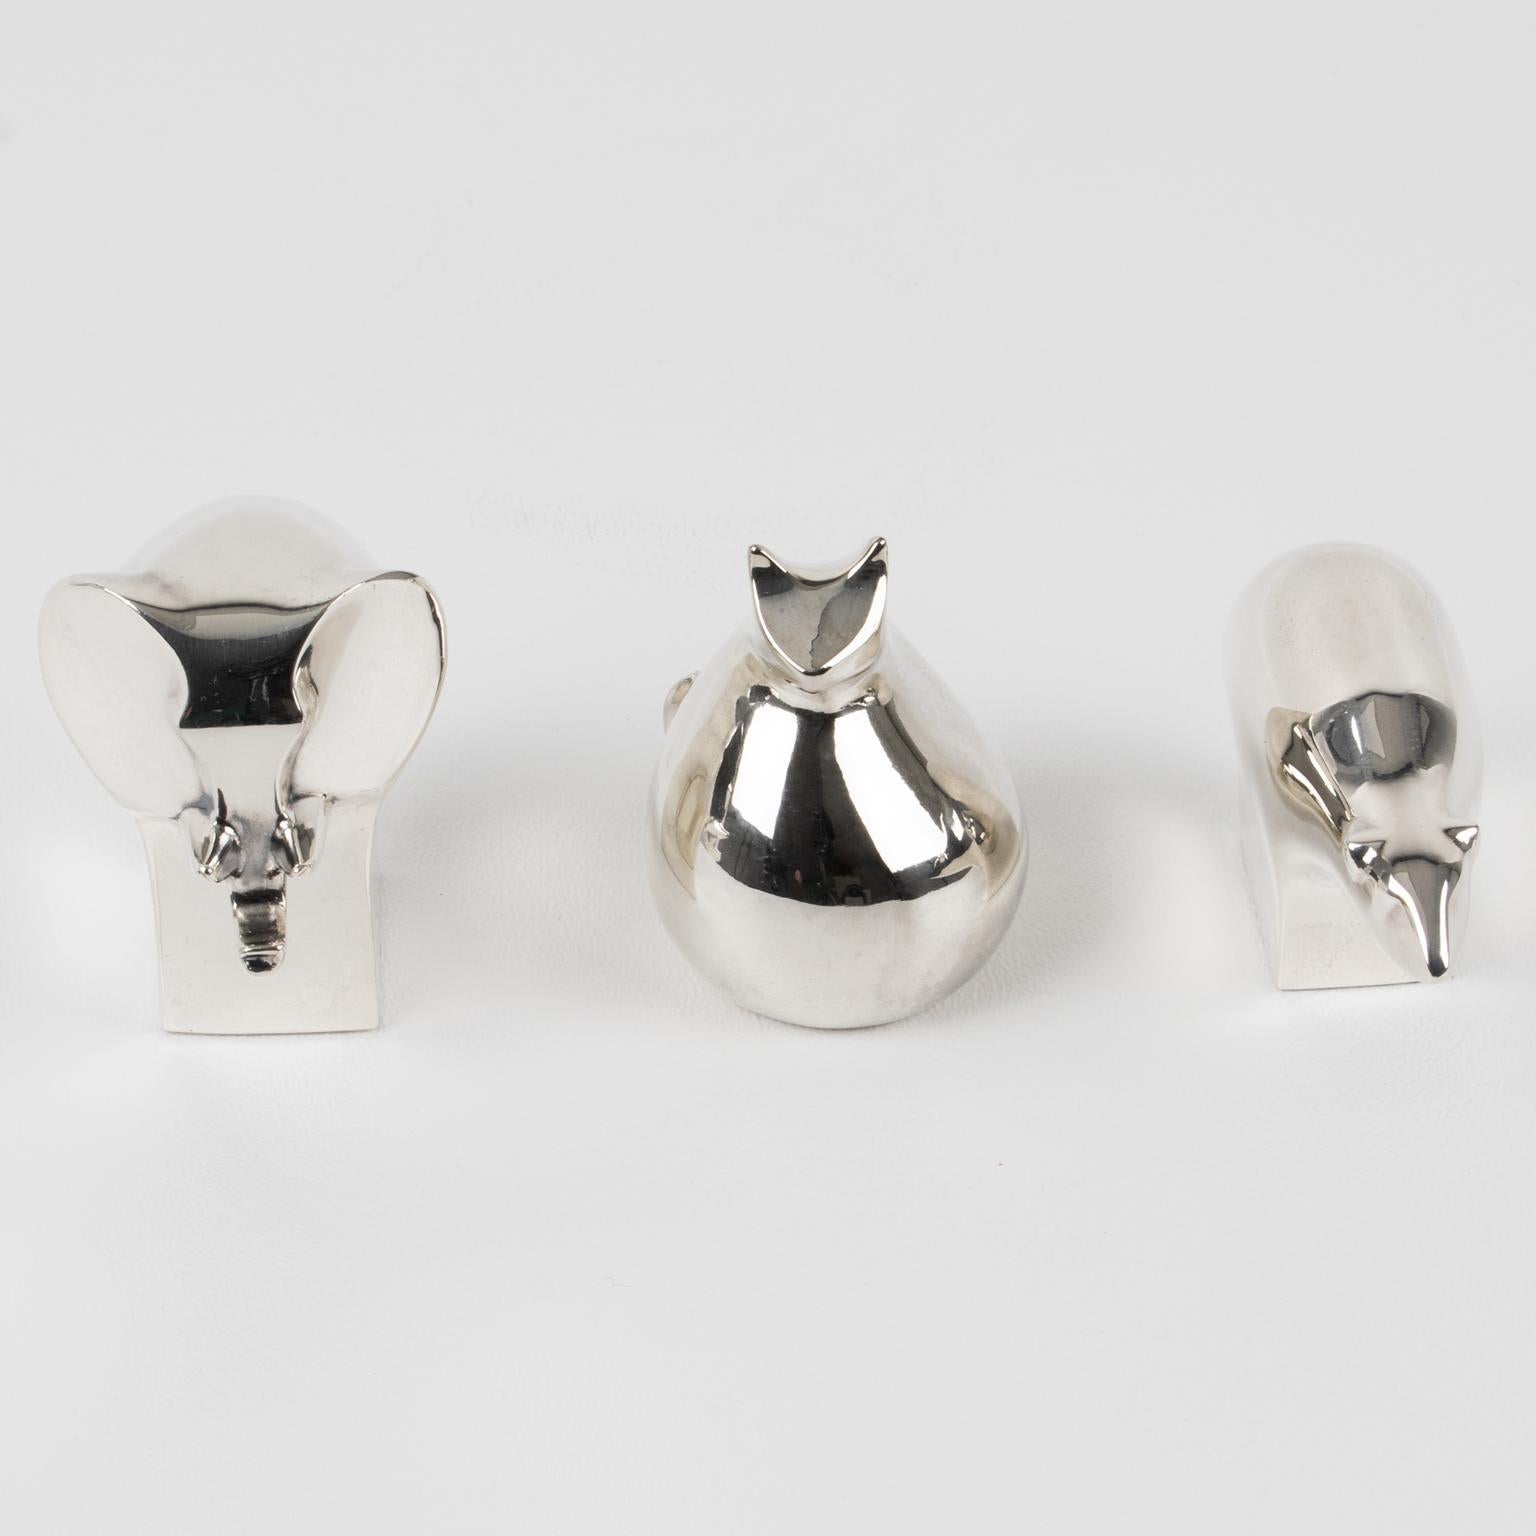 Mid-Century Modern Dansk Mid-Century Silver Plate Animal Figurine Paperweight, trio by Gunnar Cyren